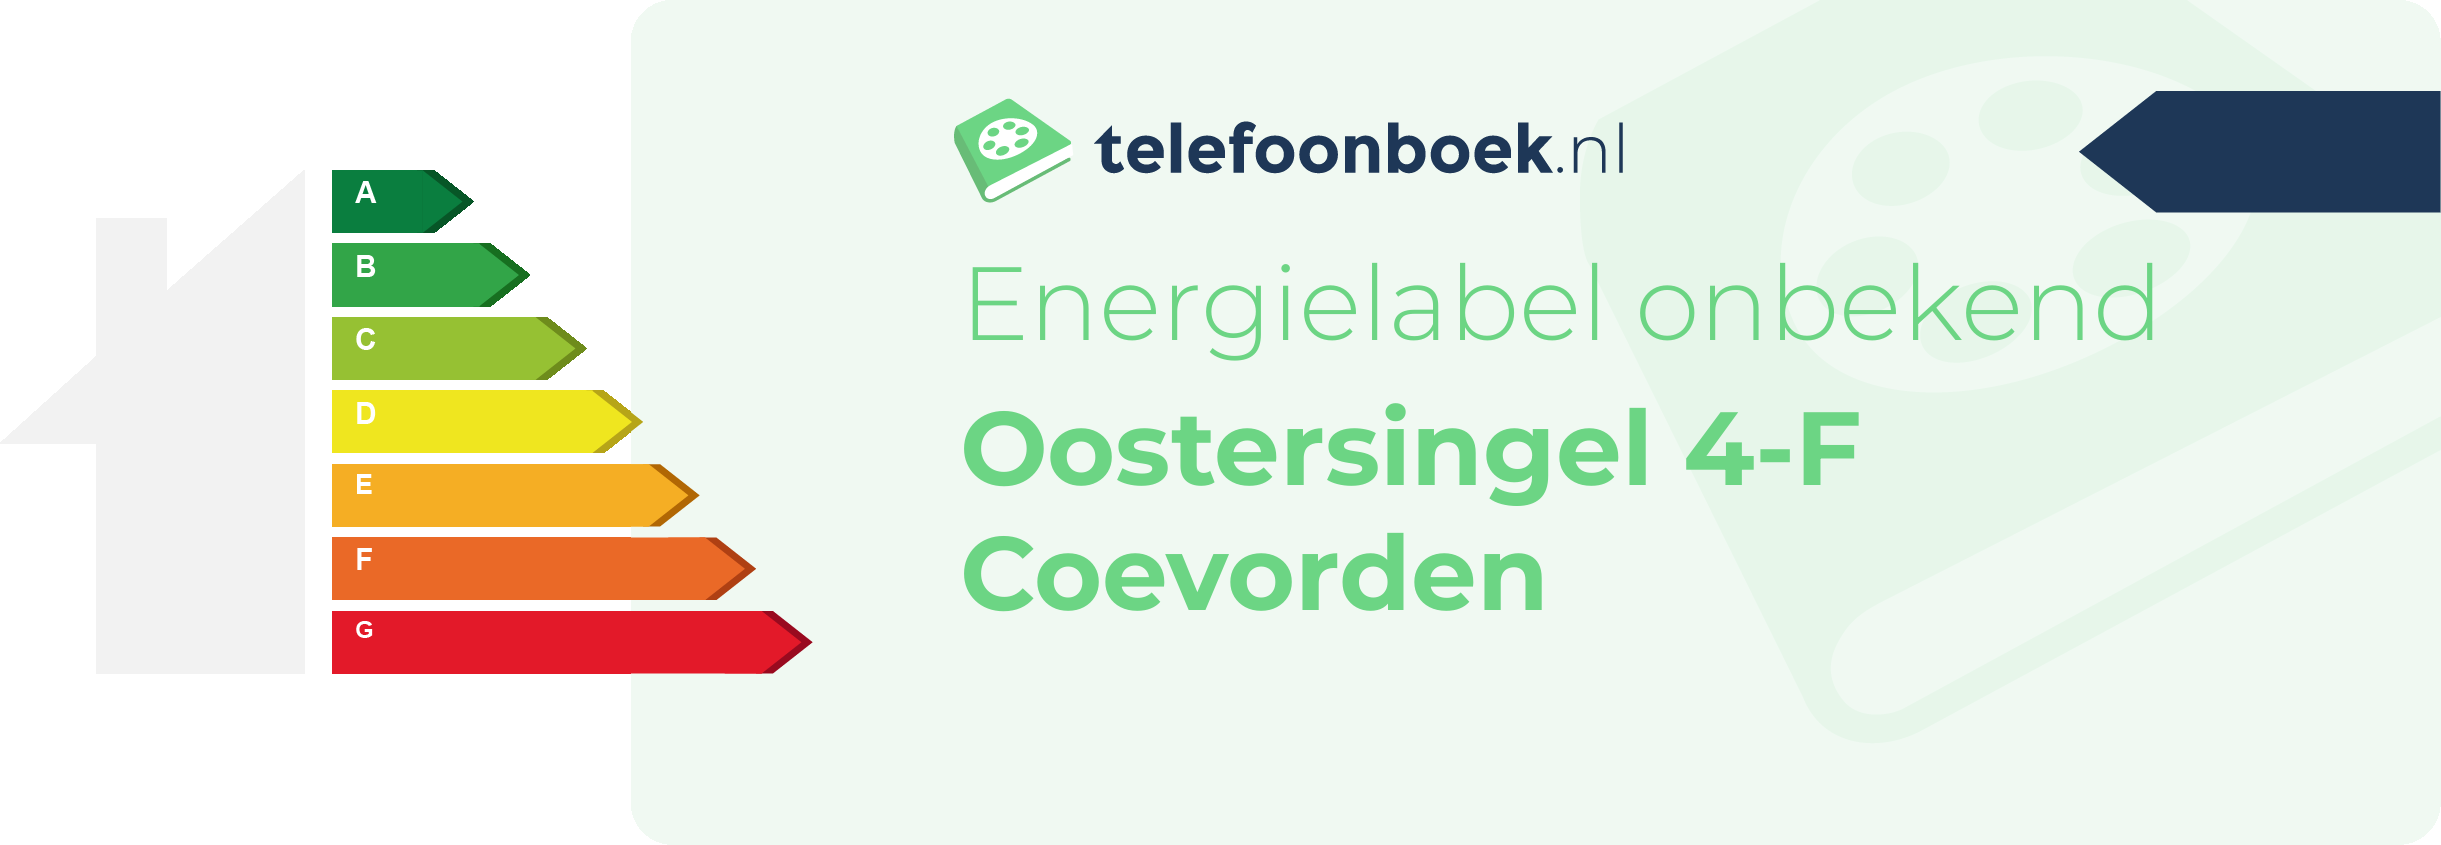 Energielabel Oostersingel 4-F Coevorden